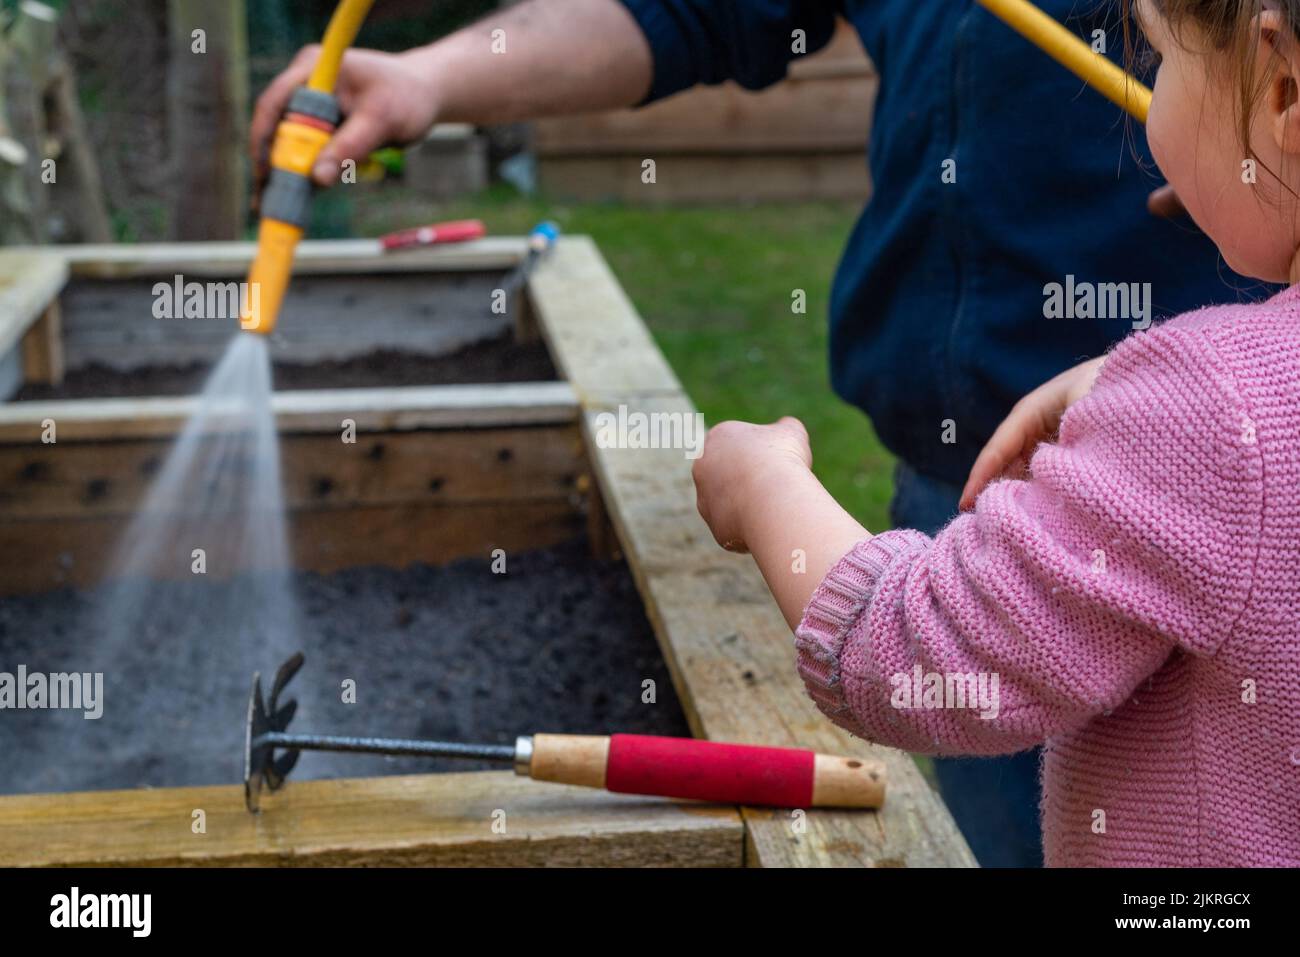 Mann sprüht Schlauchwasser auf frisch gepflanzte Samen im Gemüsepflanzenpflanzenpflanzer. Kleines Mädchen mit Werkzeugen hilft. Stockfoto